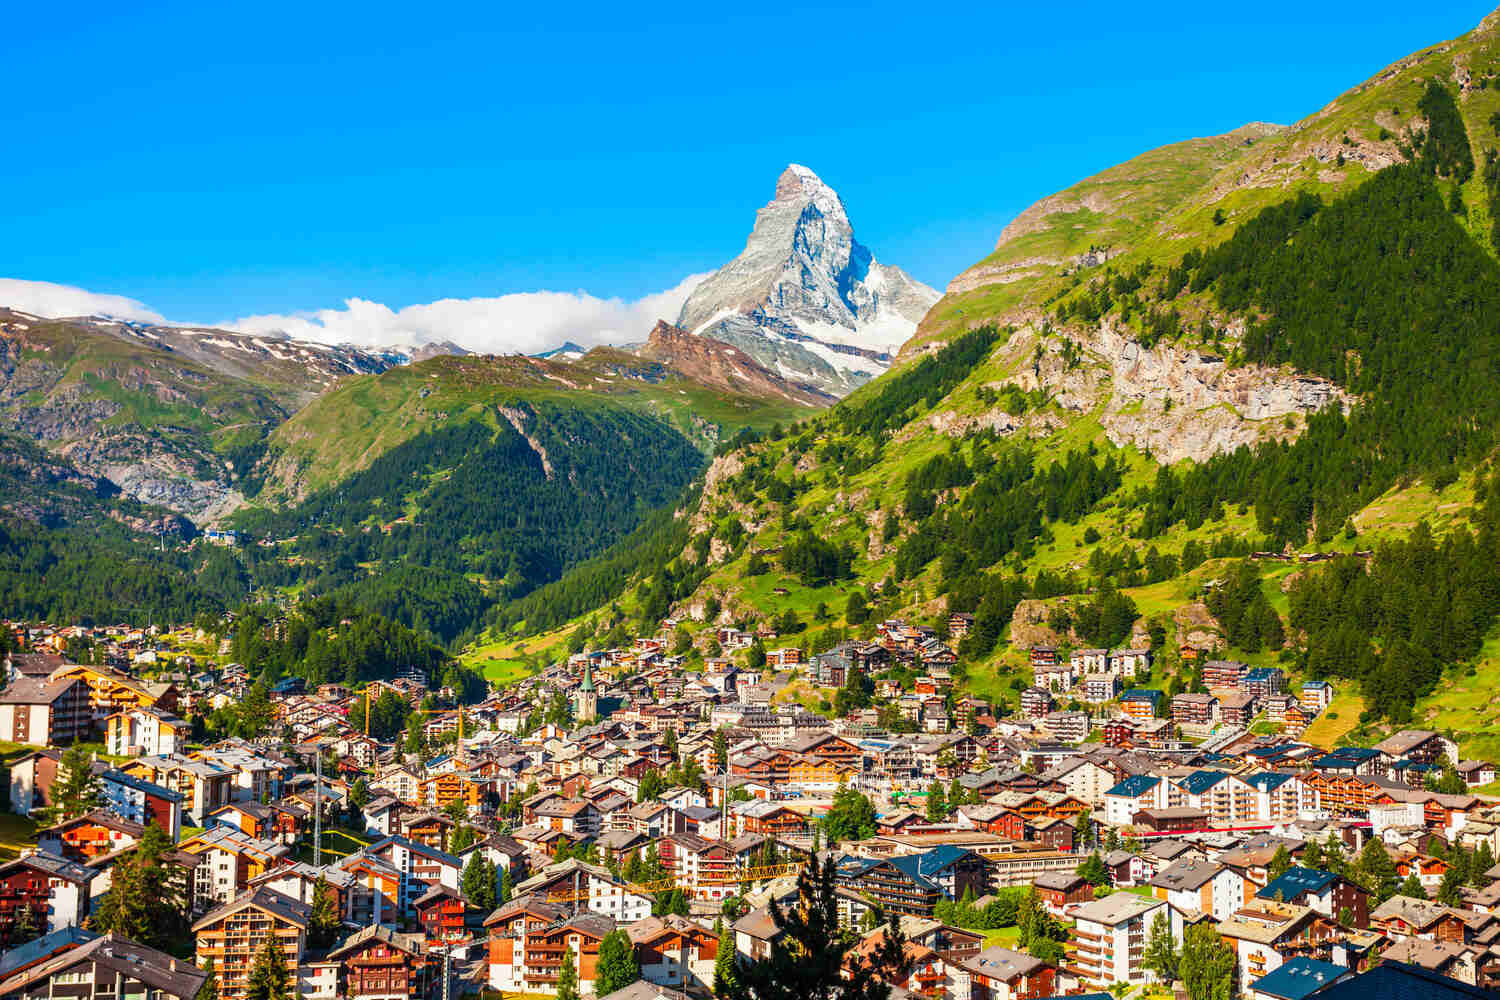 Zermatt Hotels With Matterhorn Views